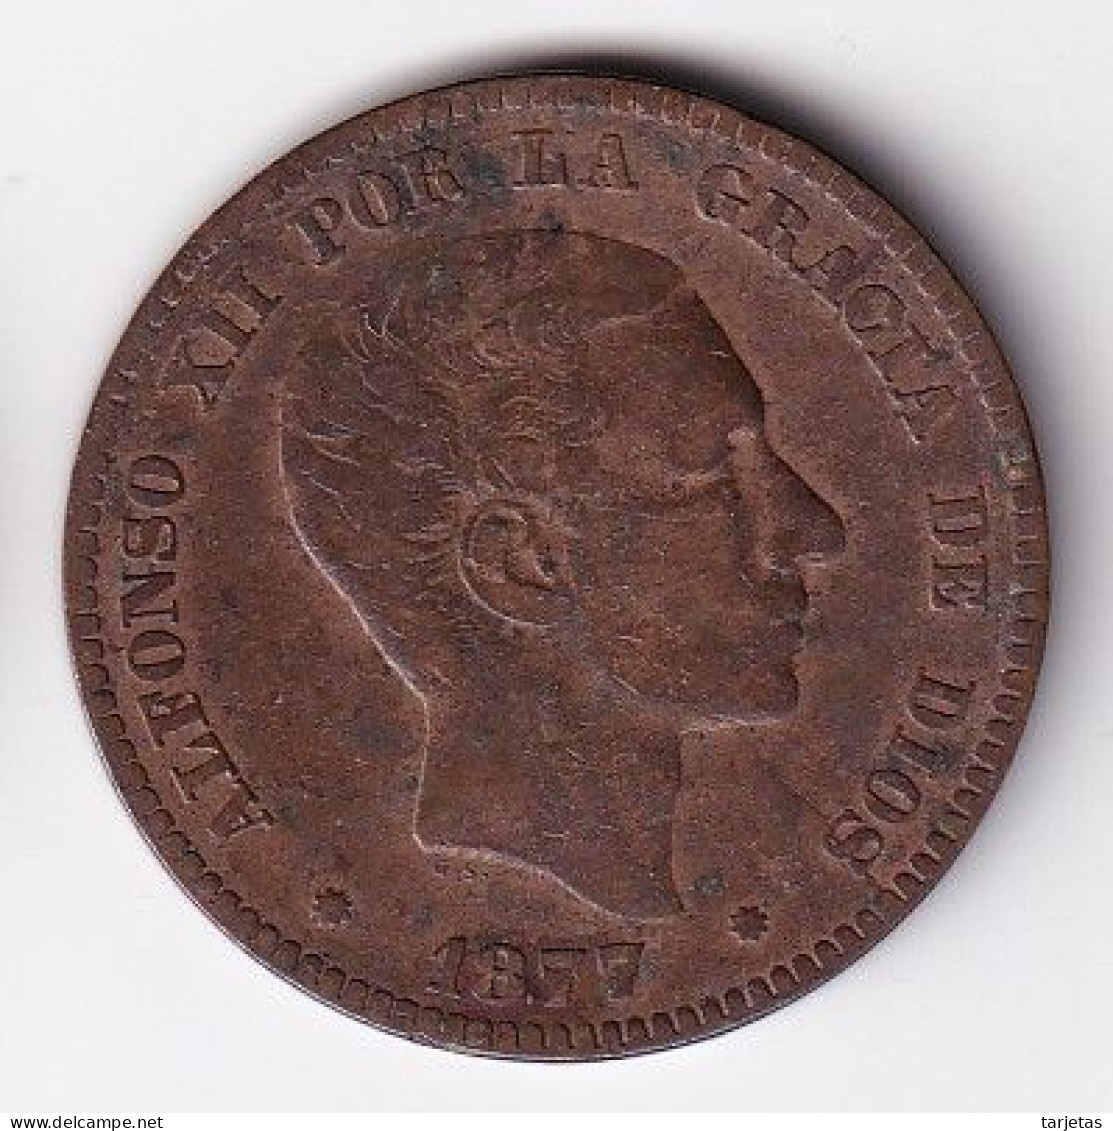 MONEDA DE ESPAÑA DE 10 CENTIMOS DEL AÑO 1877 (COIN) ALFONSO XII - First Minting